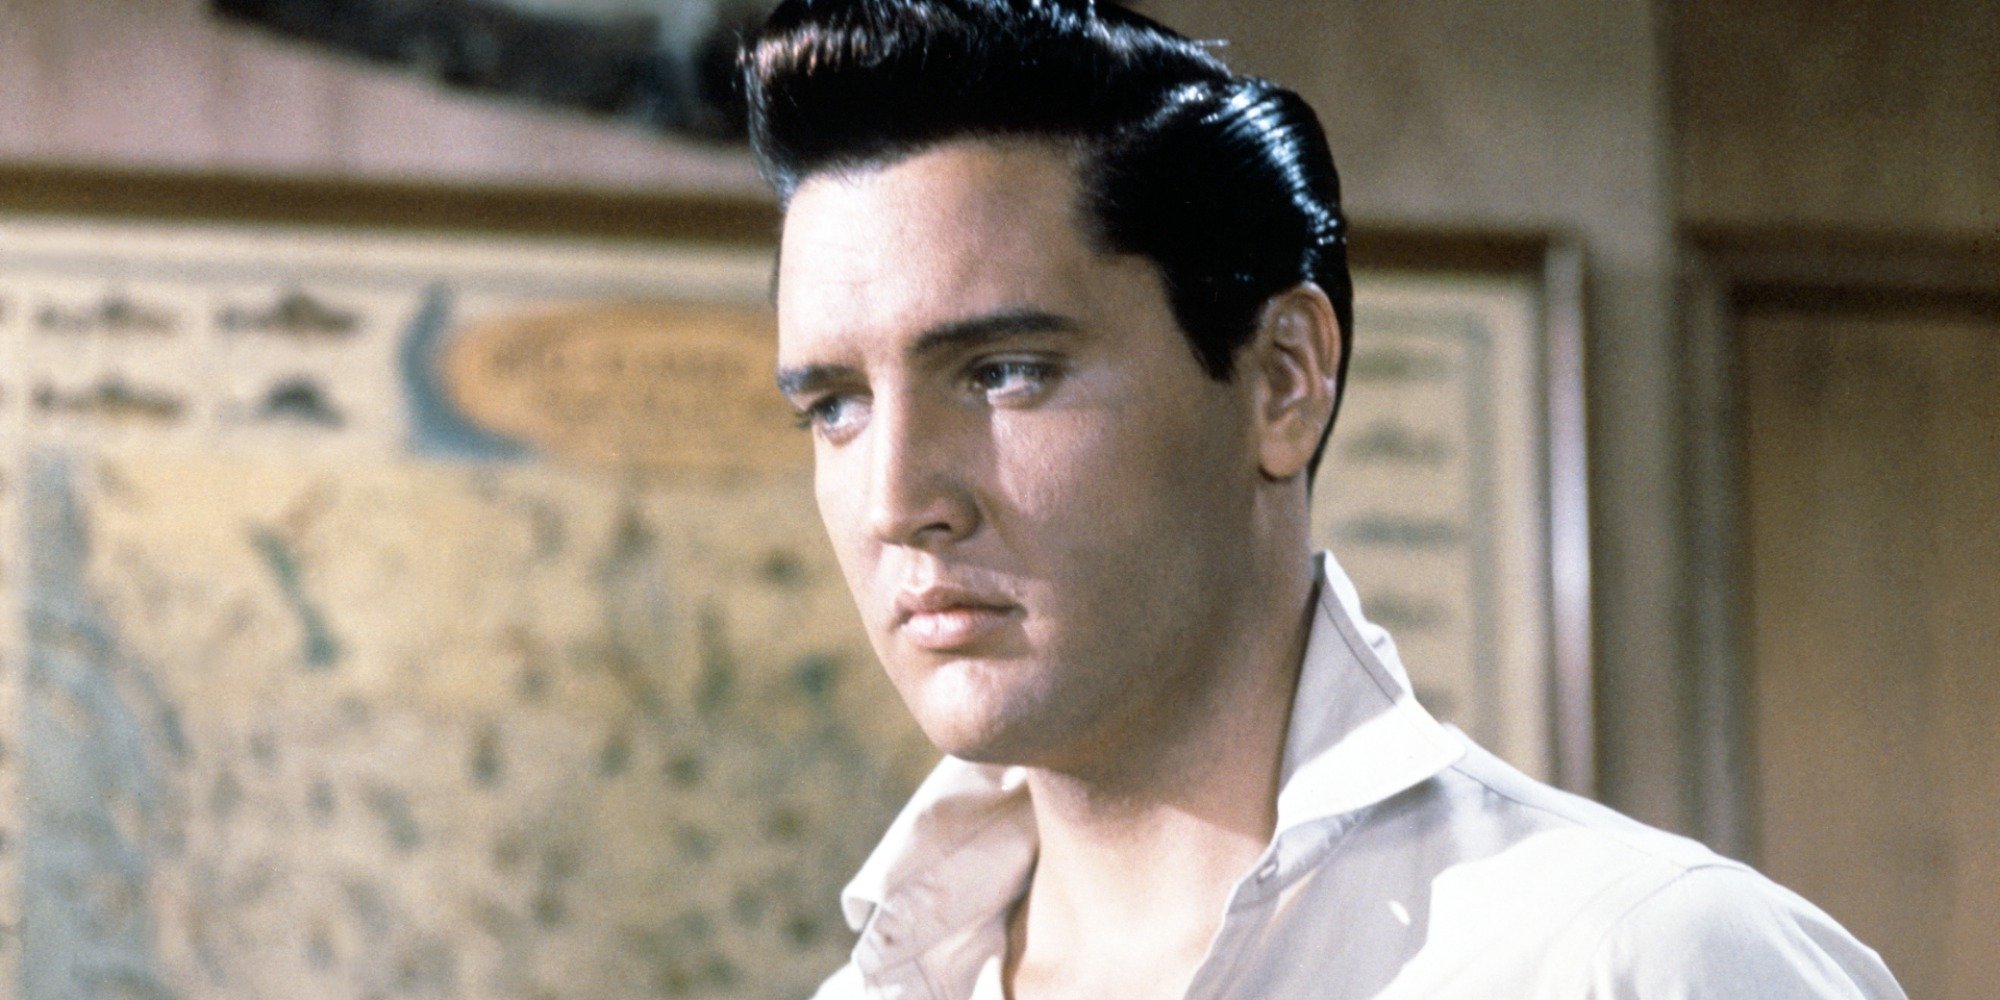 Elvis Presley poses in a scene still from the film Girls, Girls, Girls.